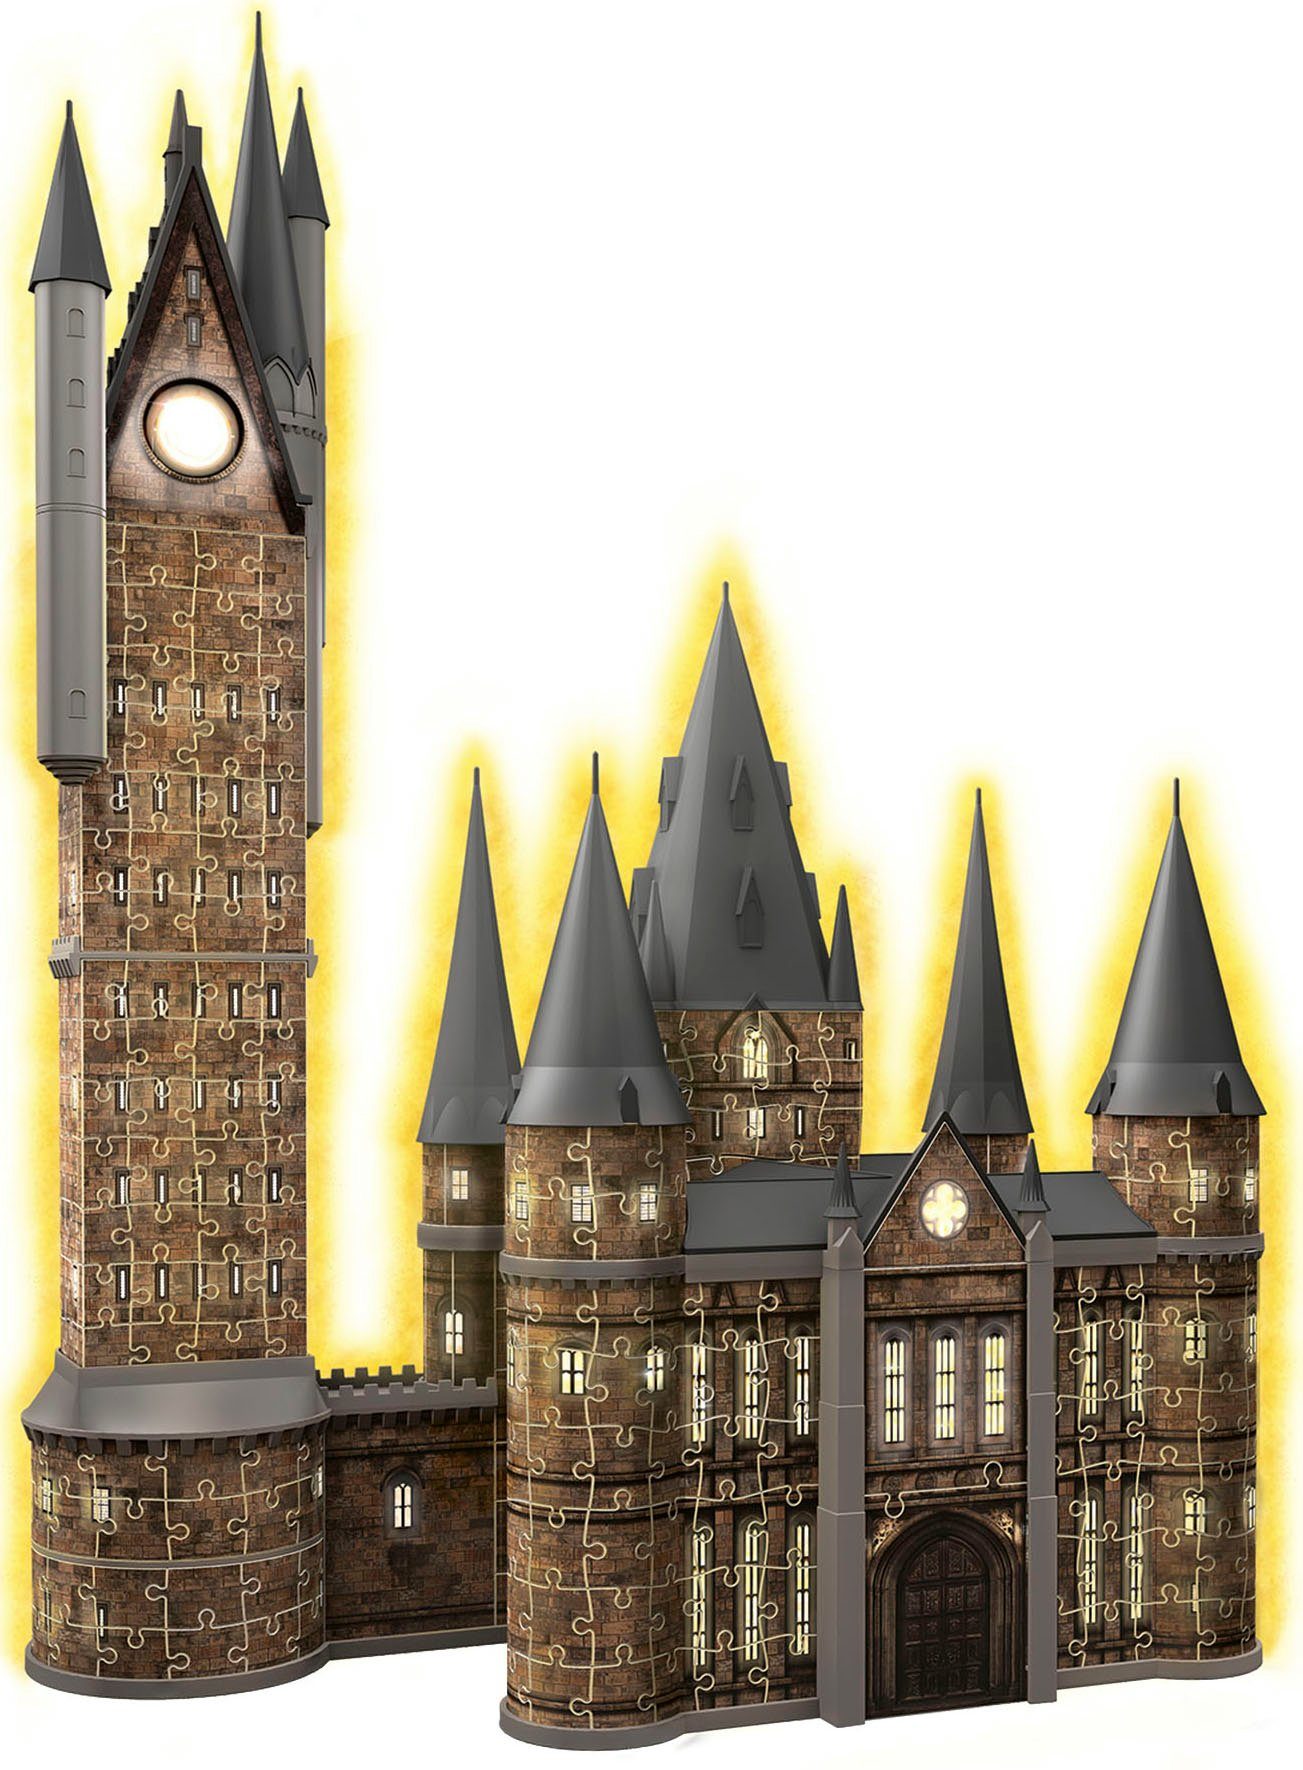 Ravensburger 3D-Puzzle Harry Potter Made - - Astronomieturm - weltweit FSC® Puzzleteile, Hogwarts Europe; Edition, Wald 626 Schloss in - Night schützt